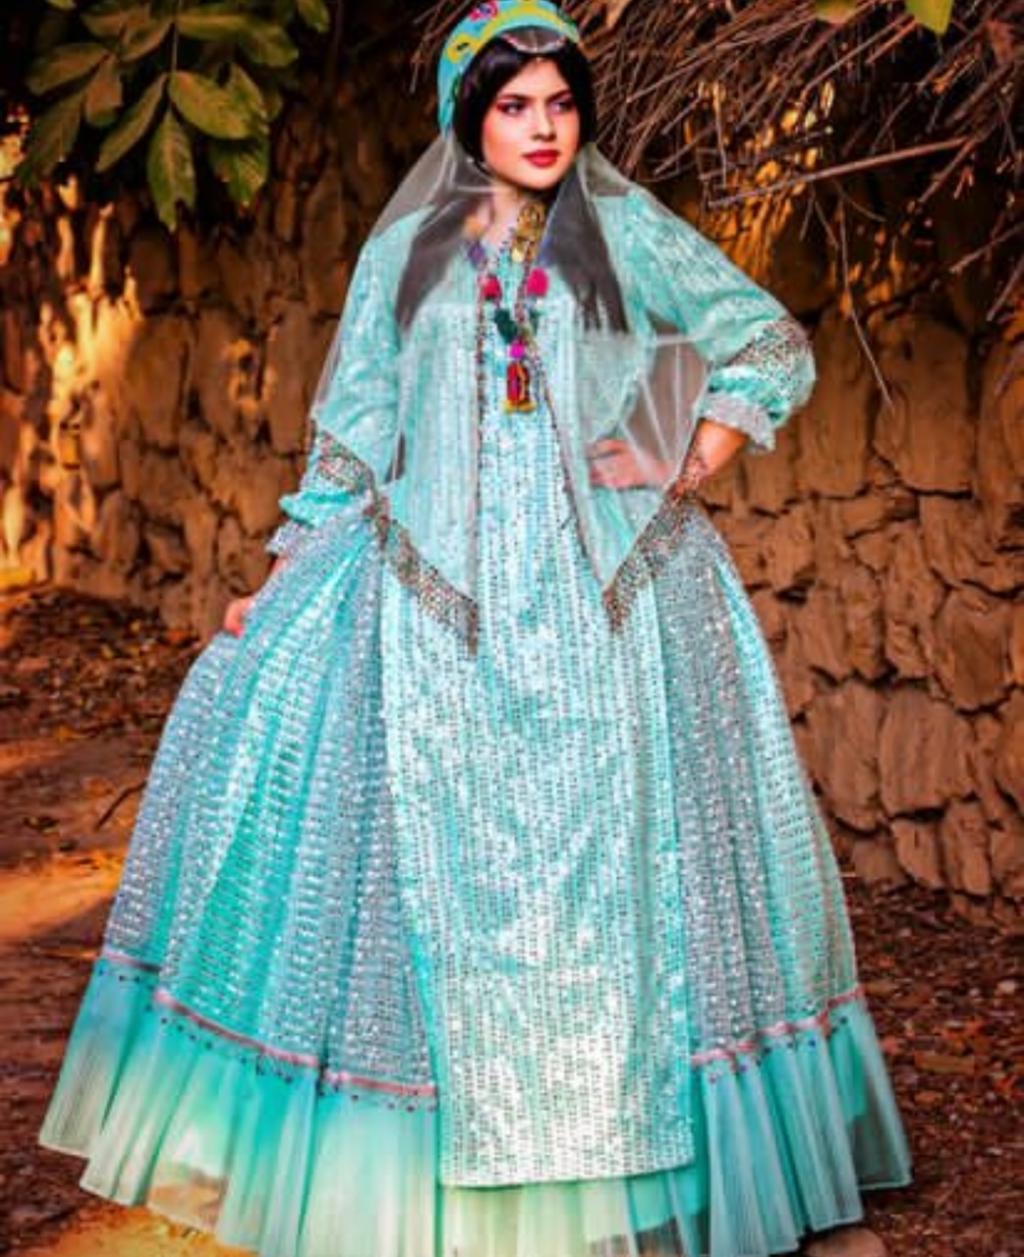 لباس محلی شیراز 3